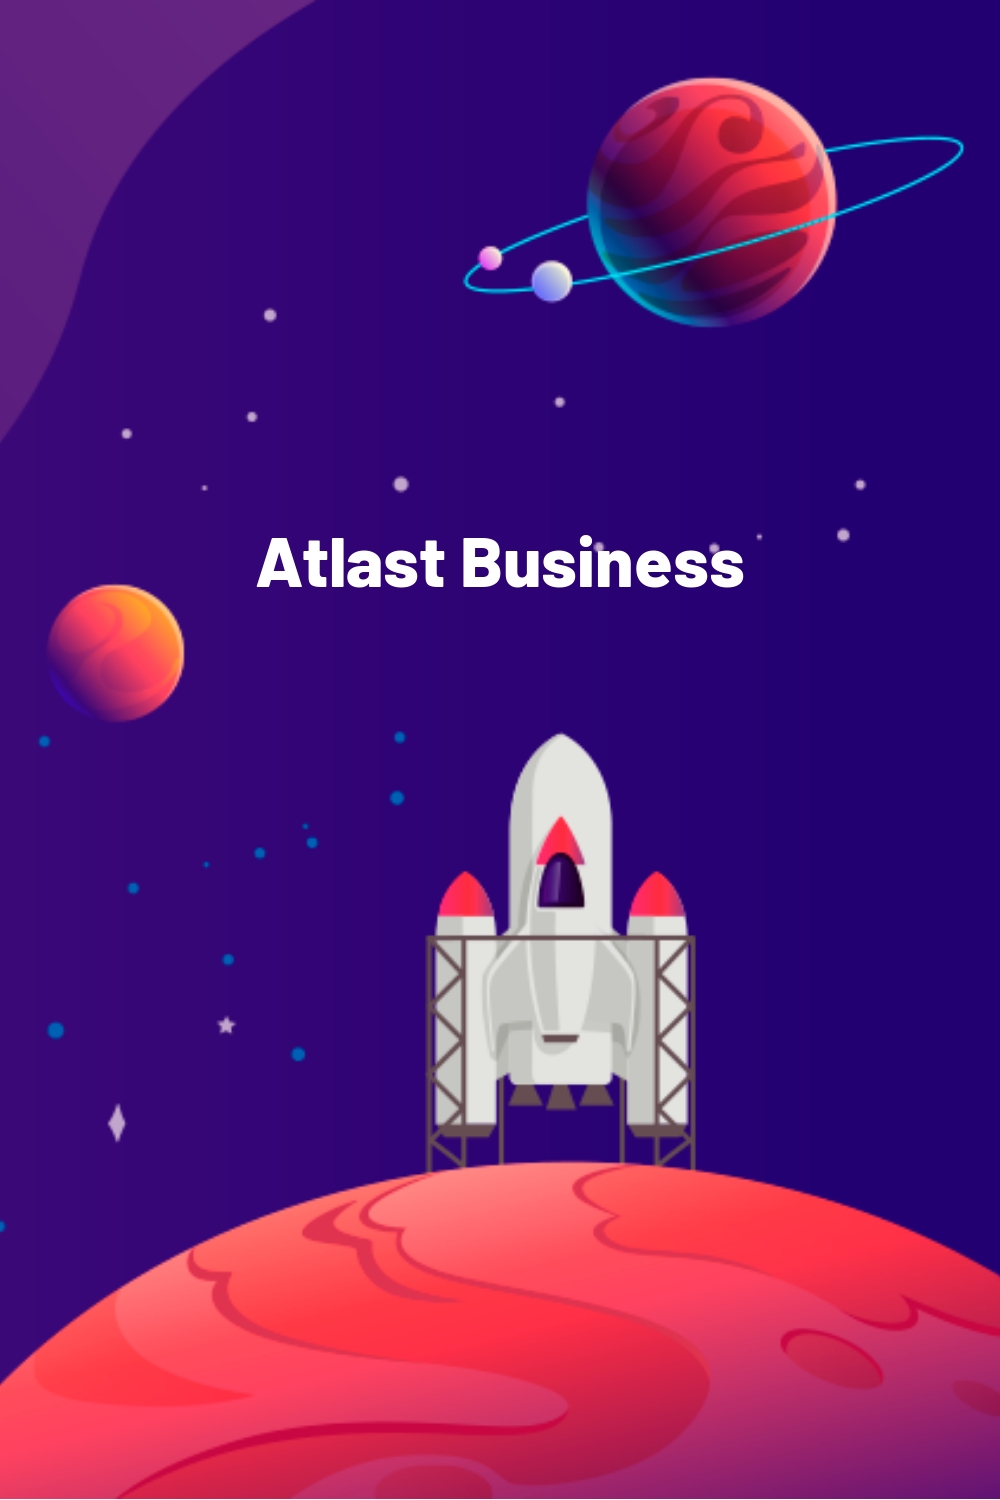 Atlast Business